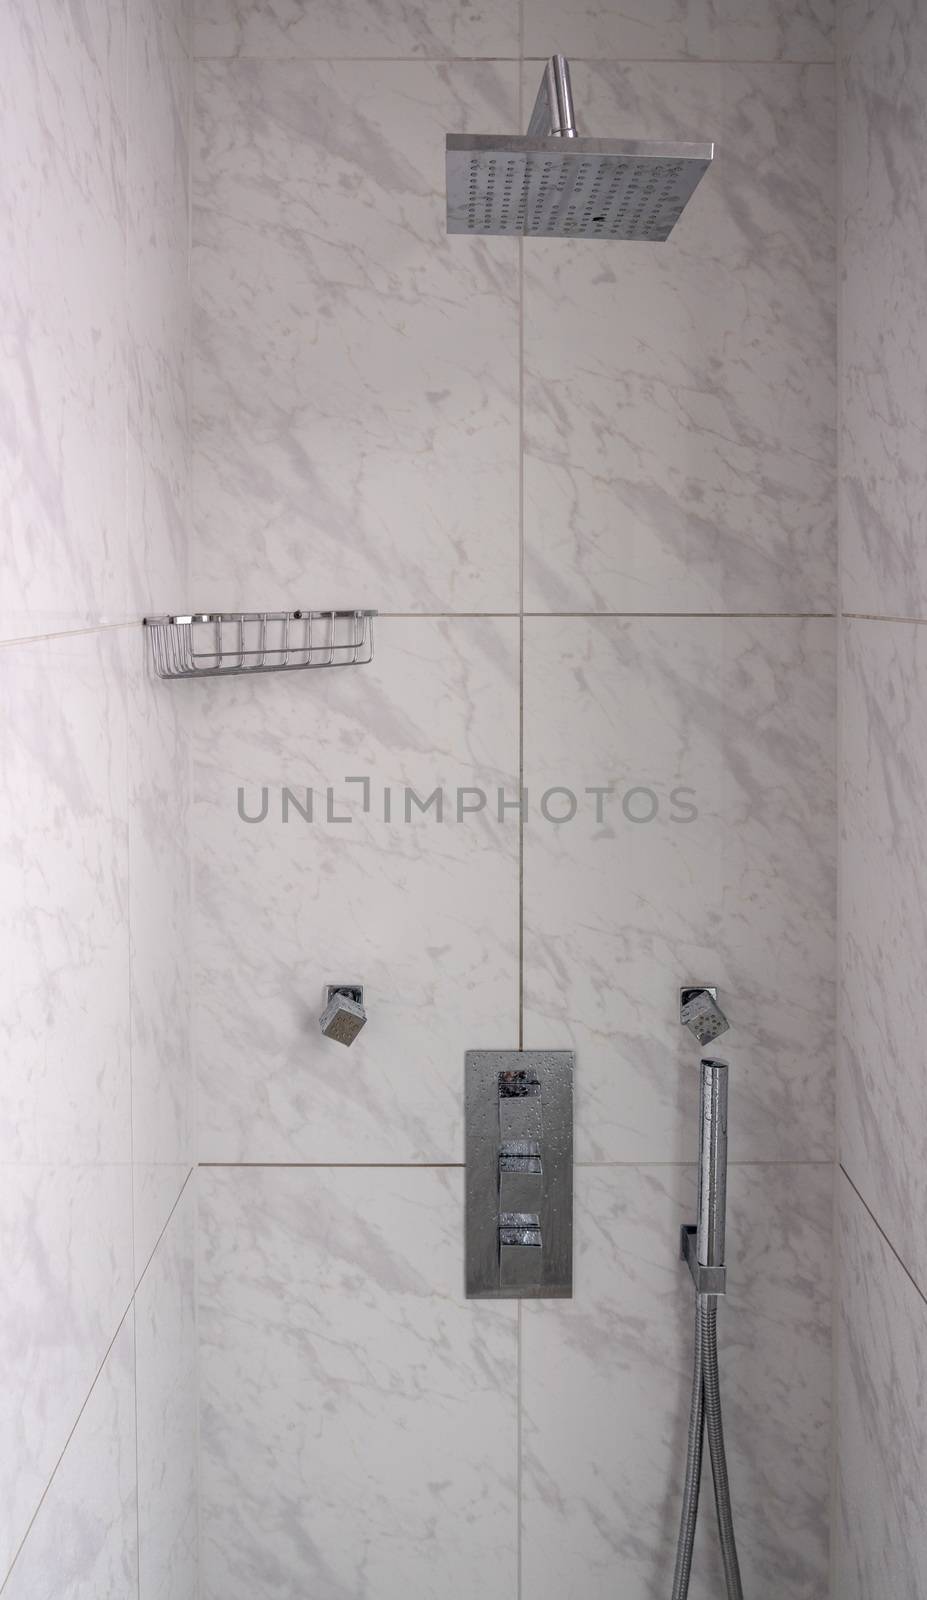 Modern tiled bathroom shower with rain head body sprays and hand attachment